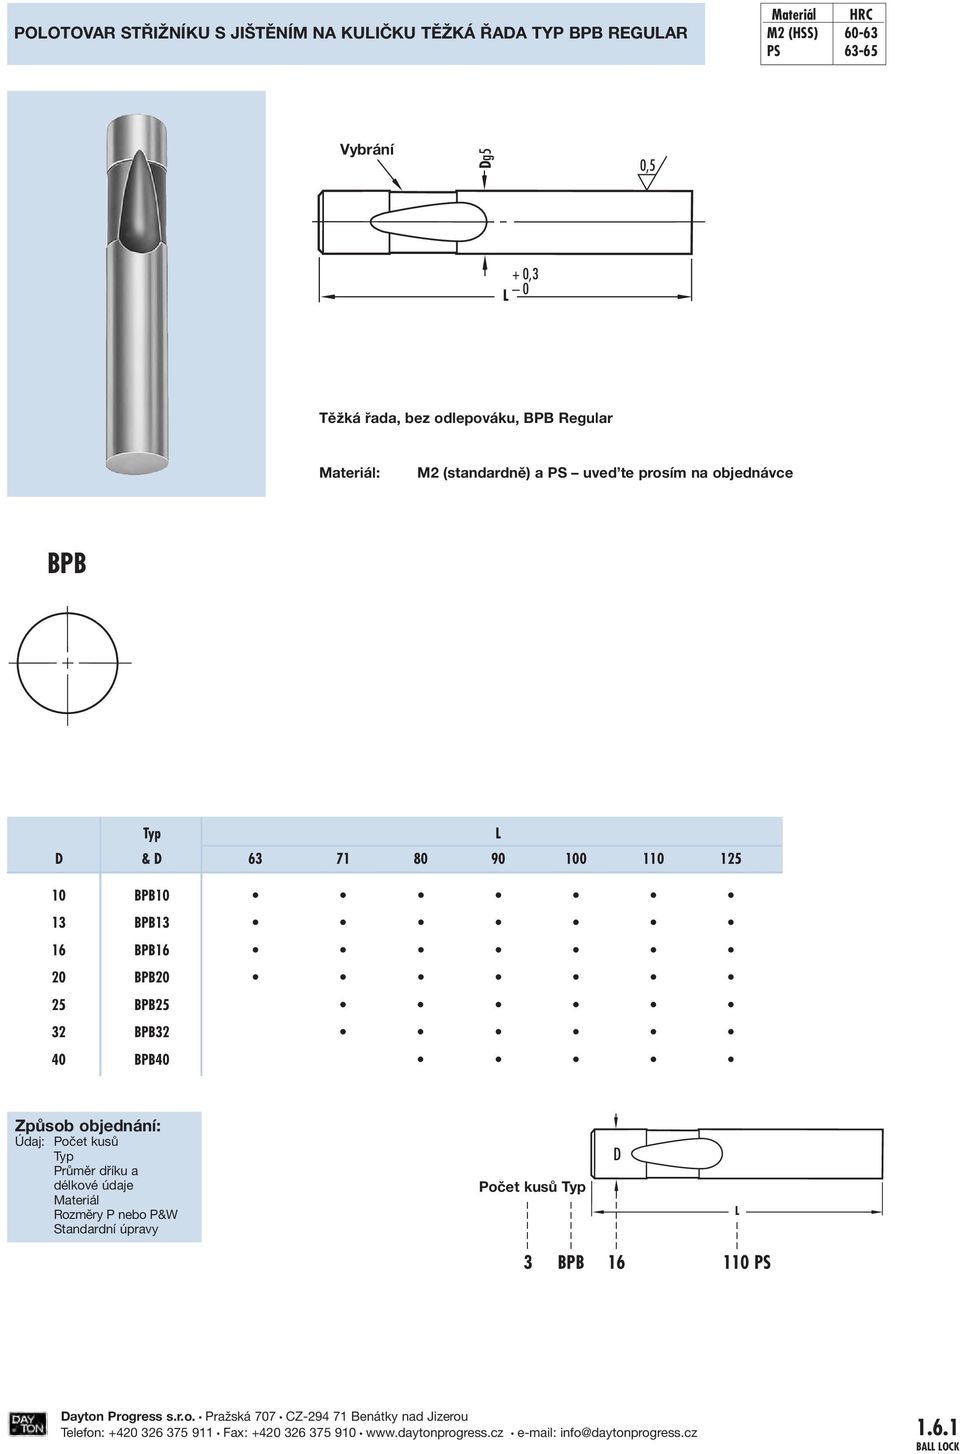 3 3 40 40 Způsob objednání: Údaj:očet kusů růměr dříku a délkové údaje Materiál ozměry nebo & Standardní úpravy očet kusů Stück.